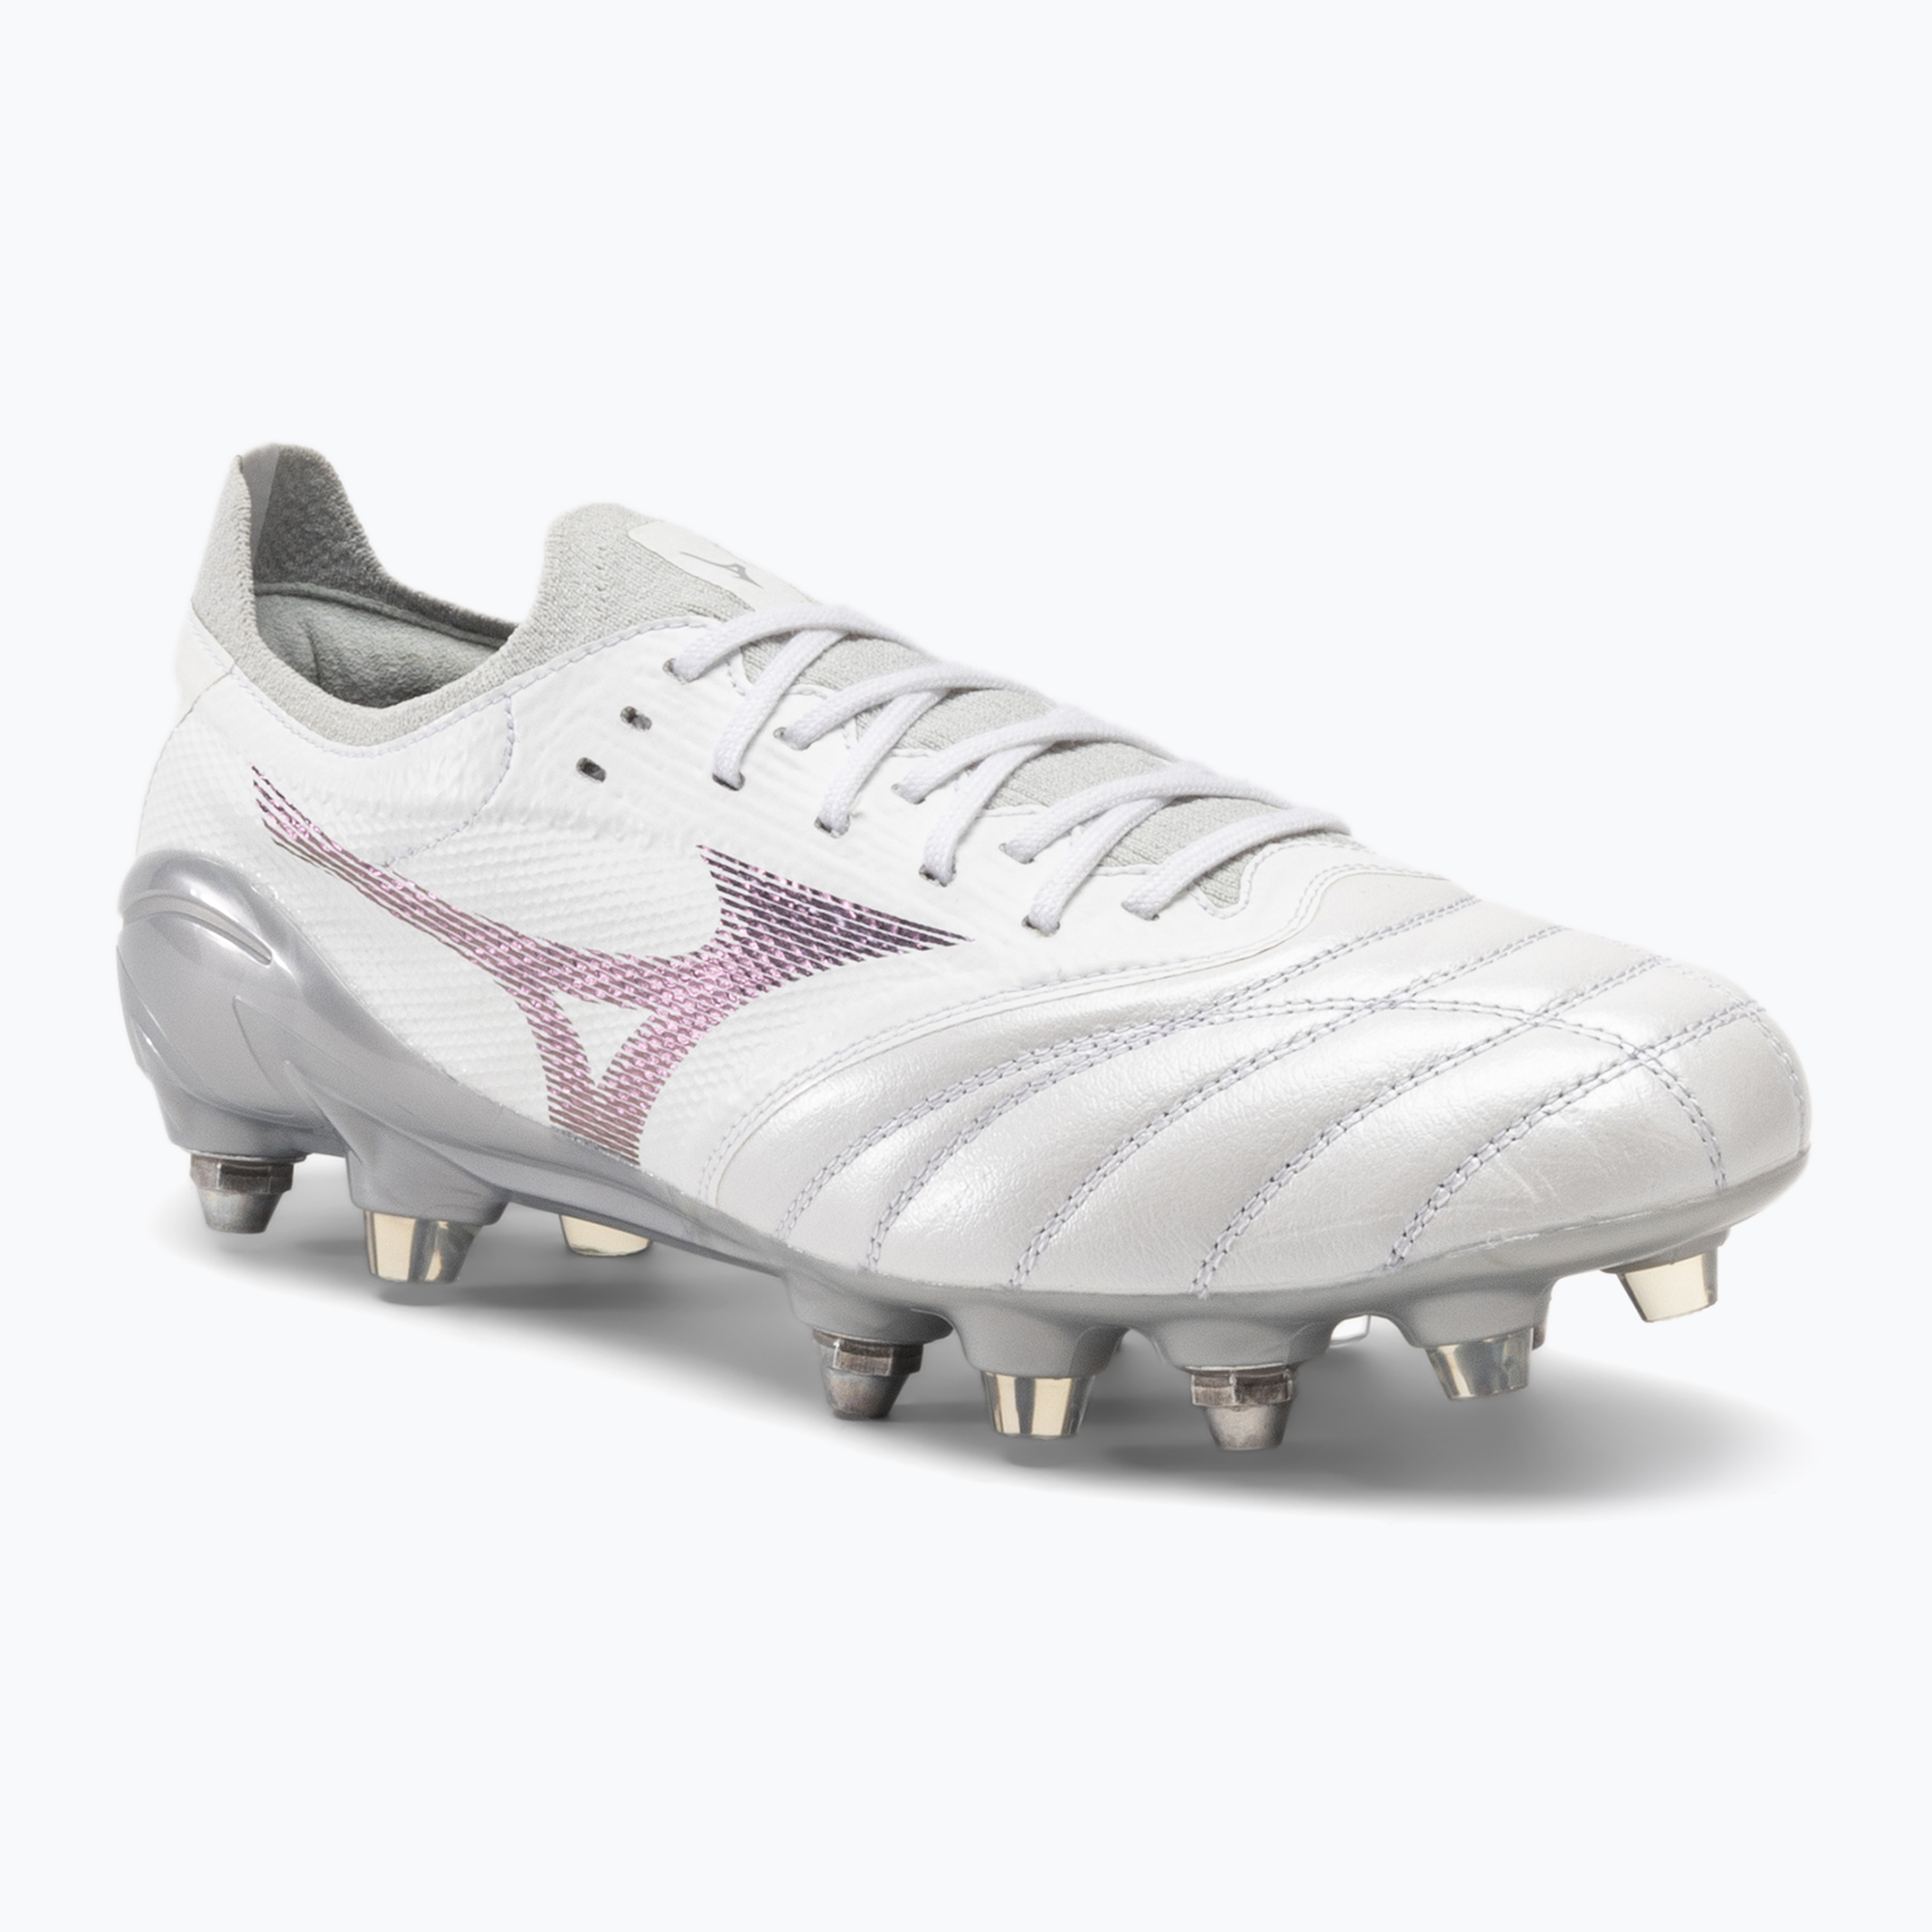 Футболни обувки Mizuno Morelia Neo III Elite M white/hologram/cool gray 3c